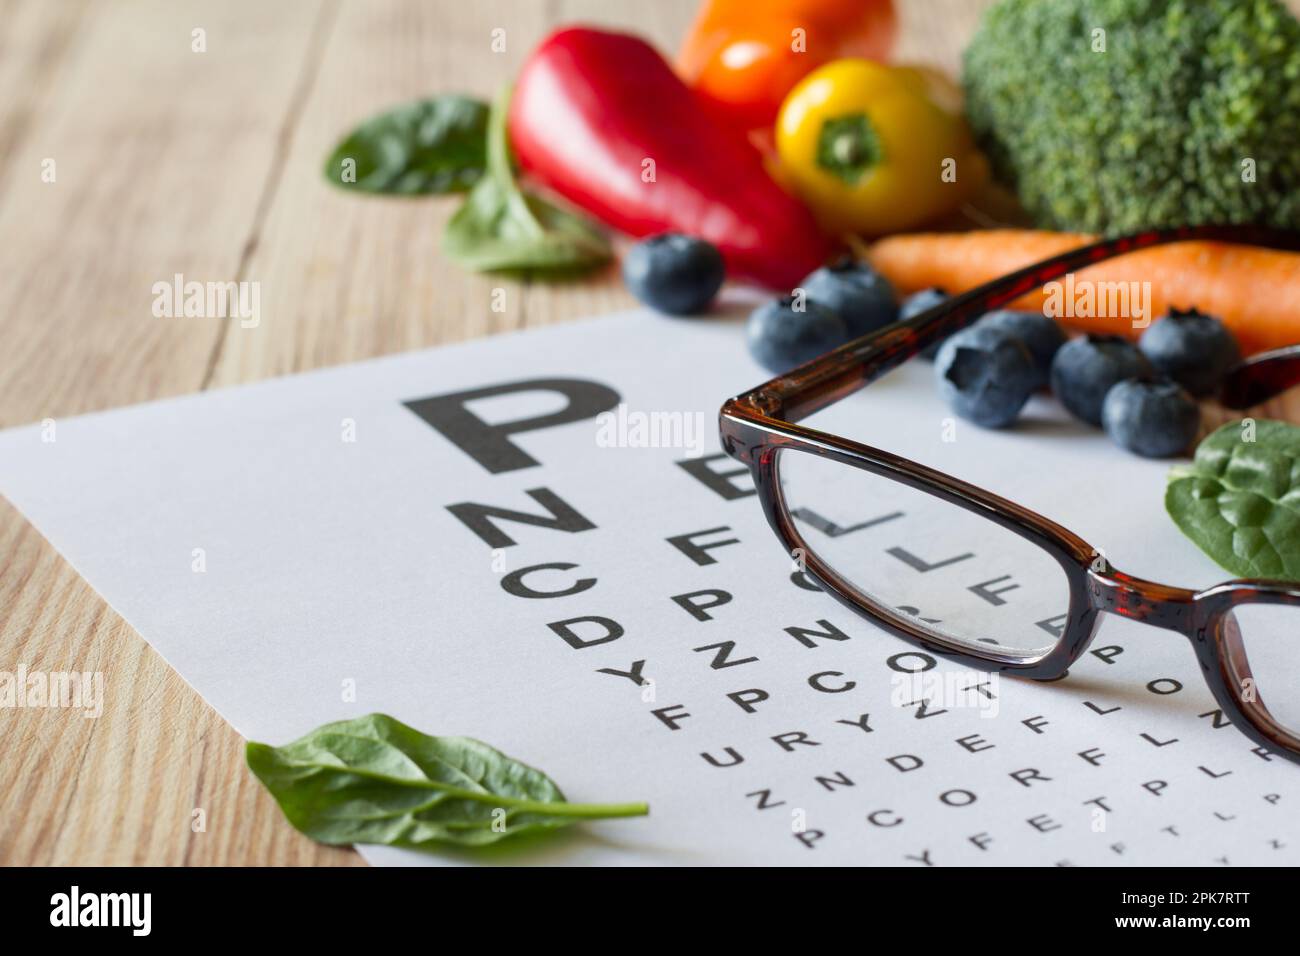 Lebensmittel für die Gesundheit der Augen, buntes Gemüse und Obst, reich an Lutein, Brille und Augentesttabelle auf Holzhintergrund, Konzept Stockfoto